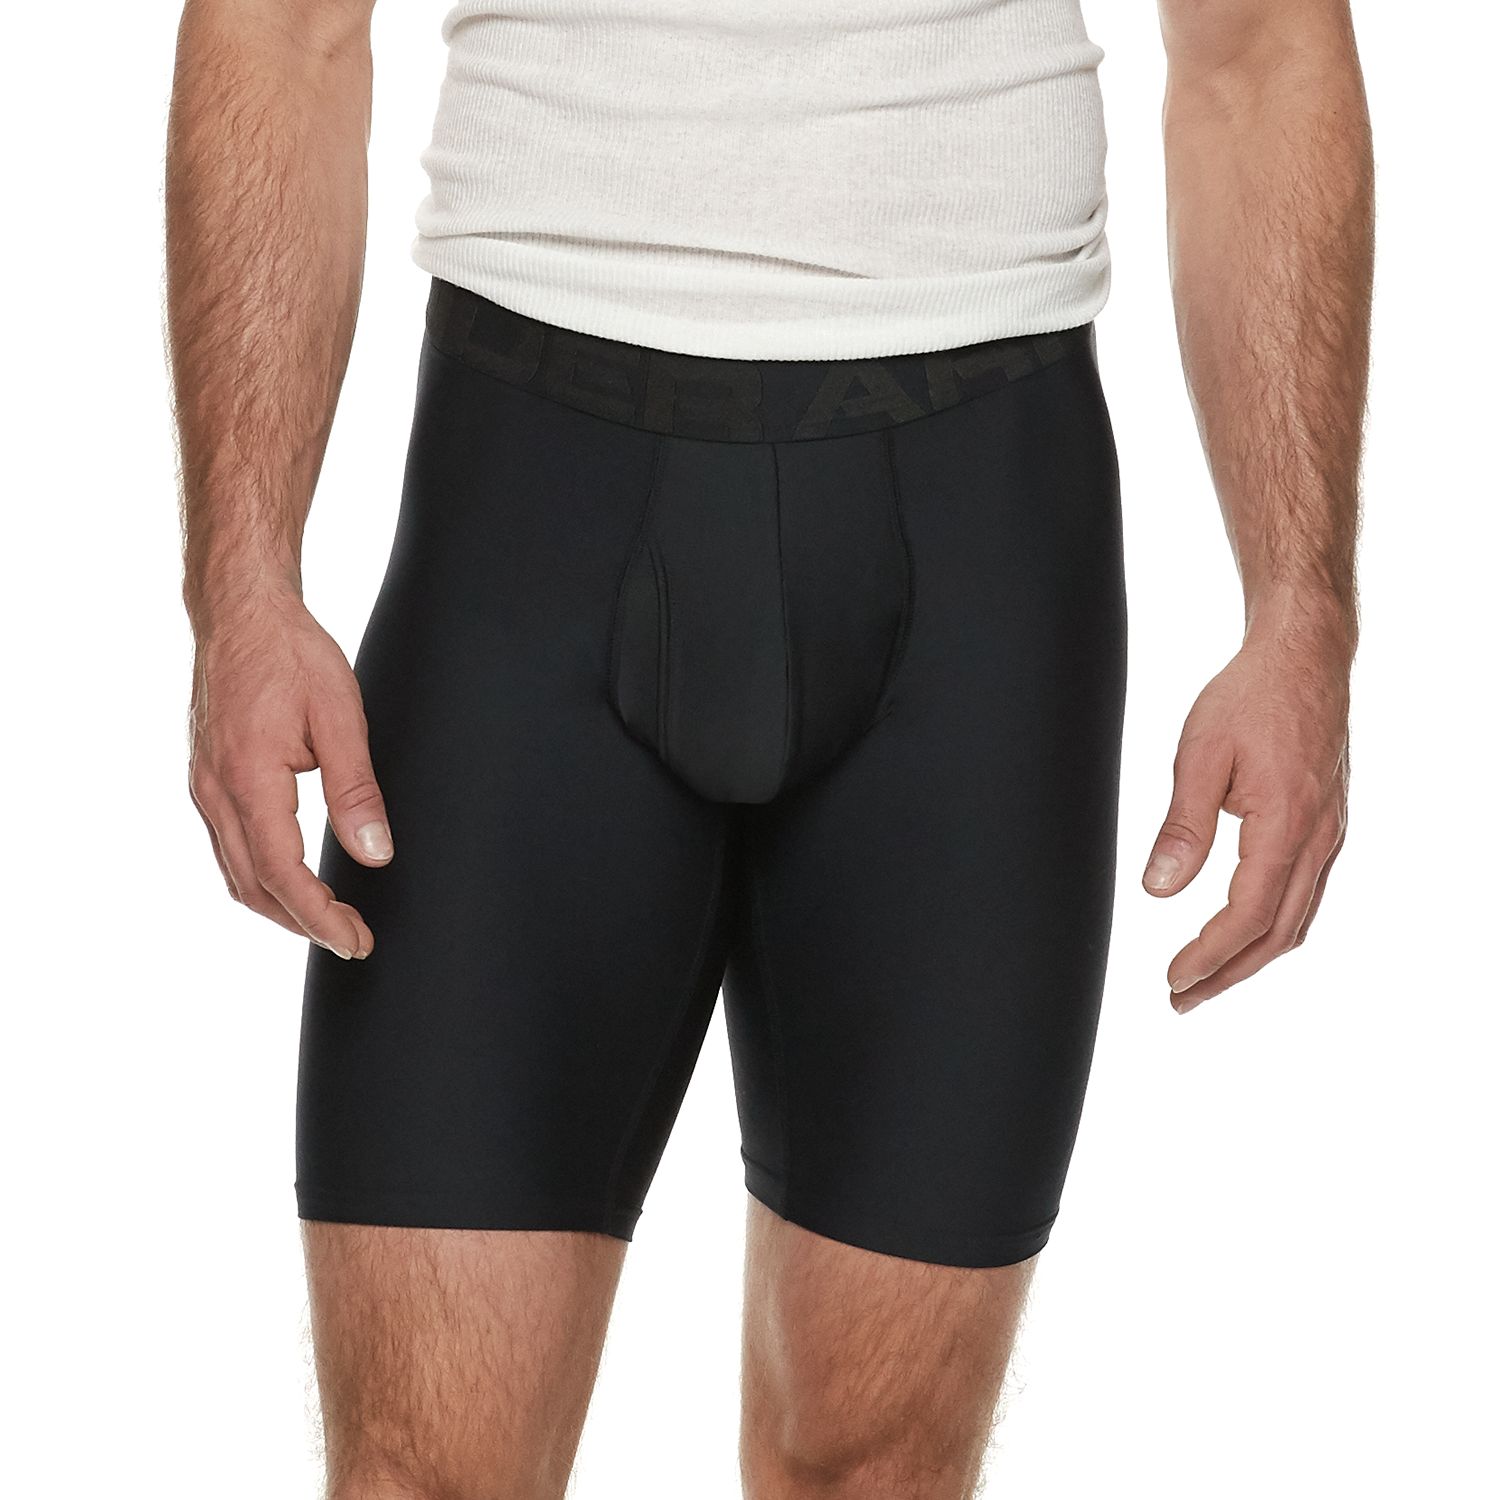 Men's Under Armour Underwear: Set the 